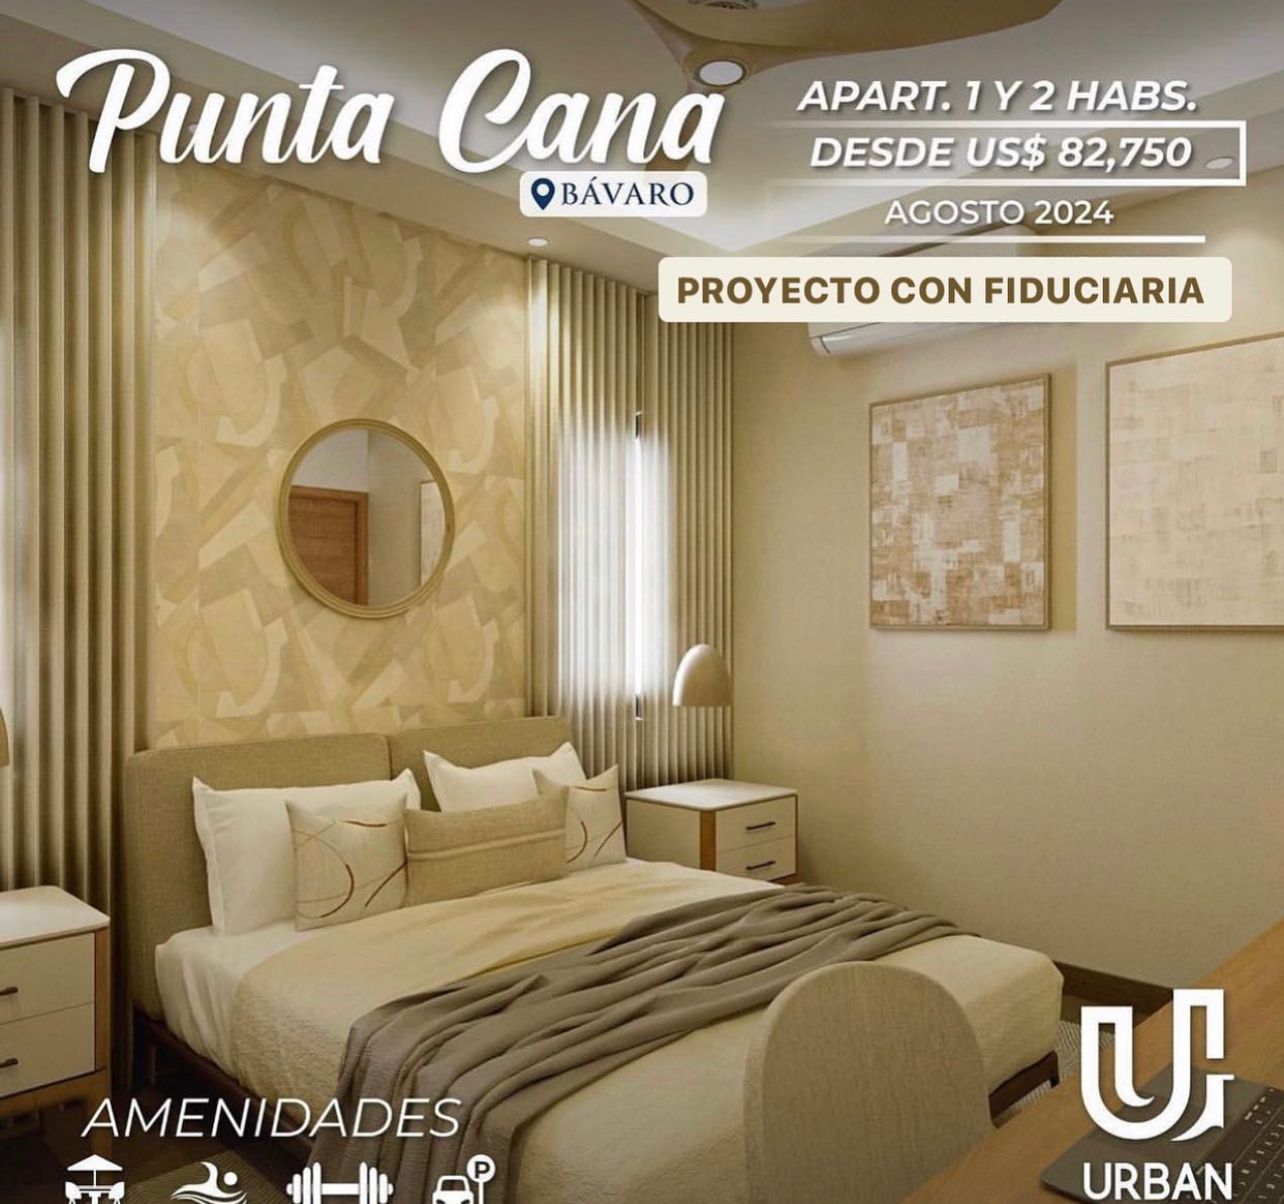 Apartamentos con Jacuzzi y Fiduciaria en Punta Cana Foto 7206031-3.jpg